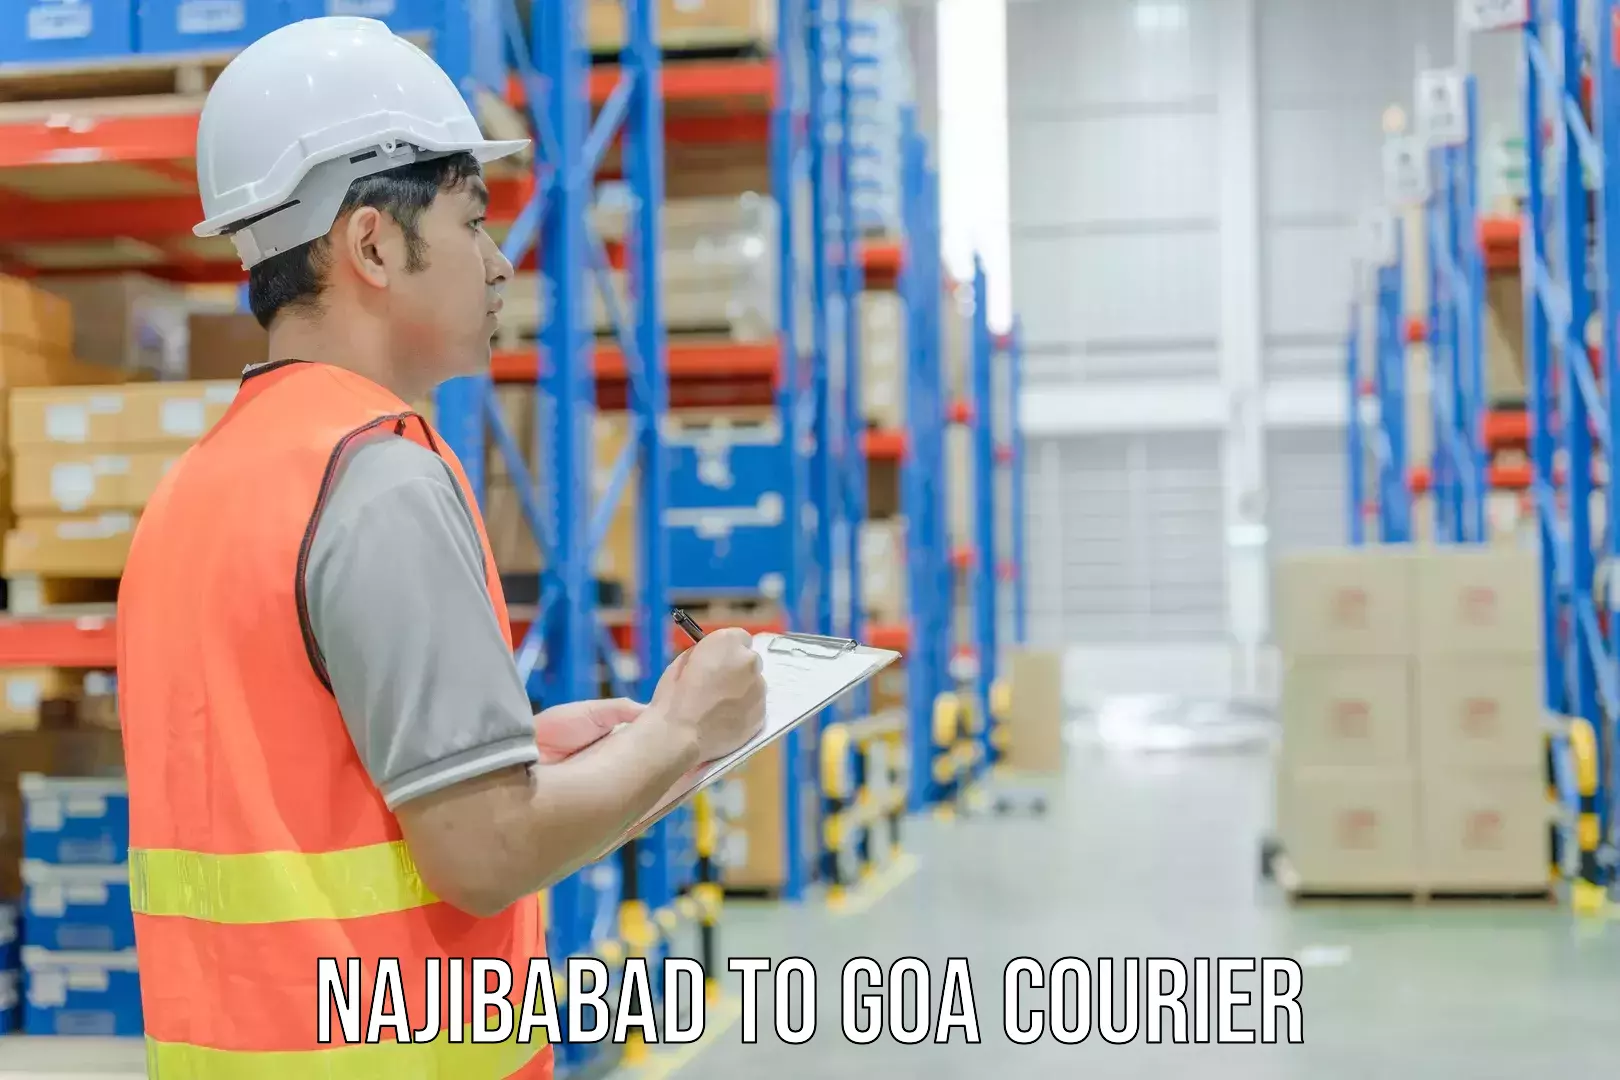 Global logistics network Najibabad to IIT Goa